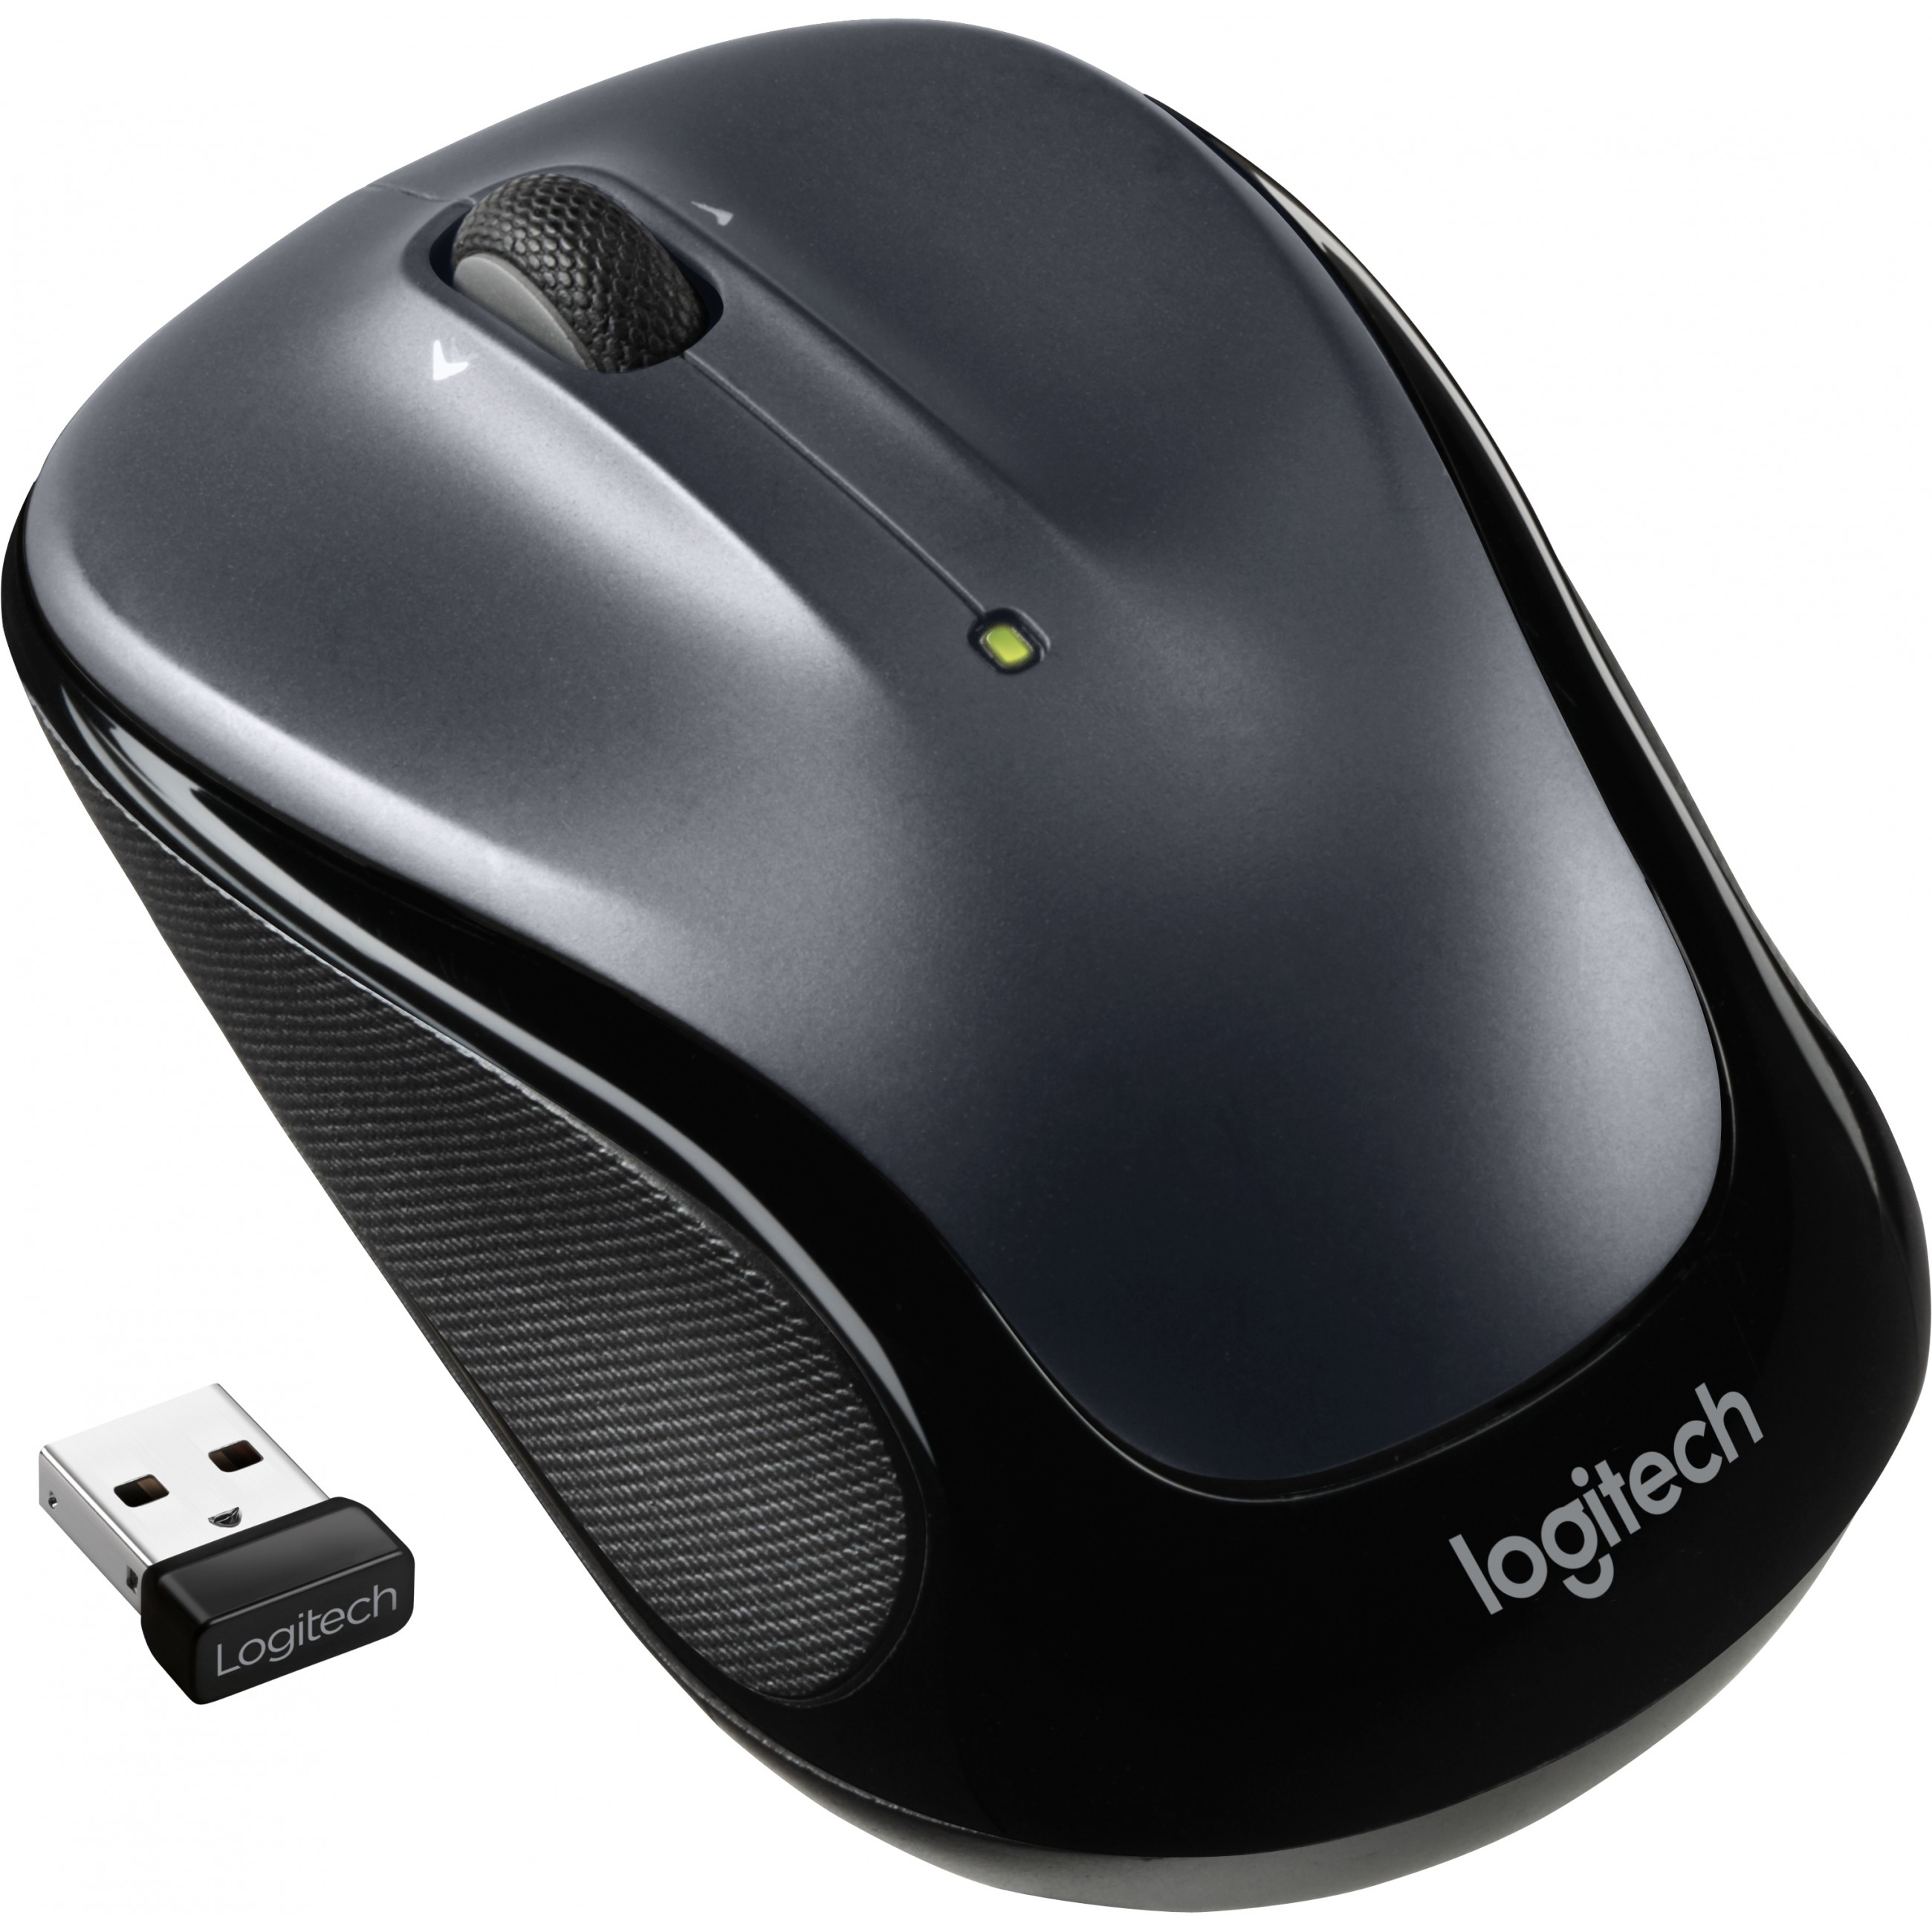 Logitech M325s mouse